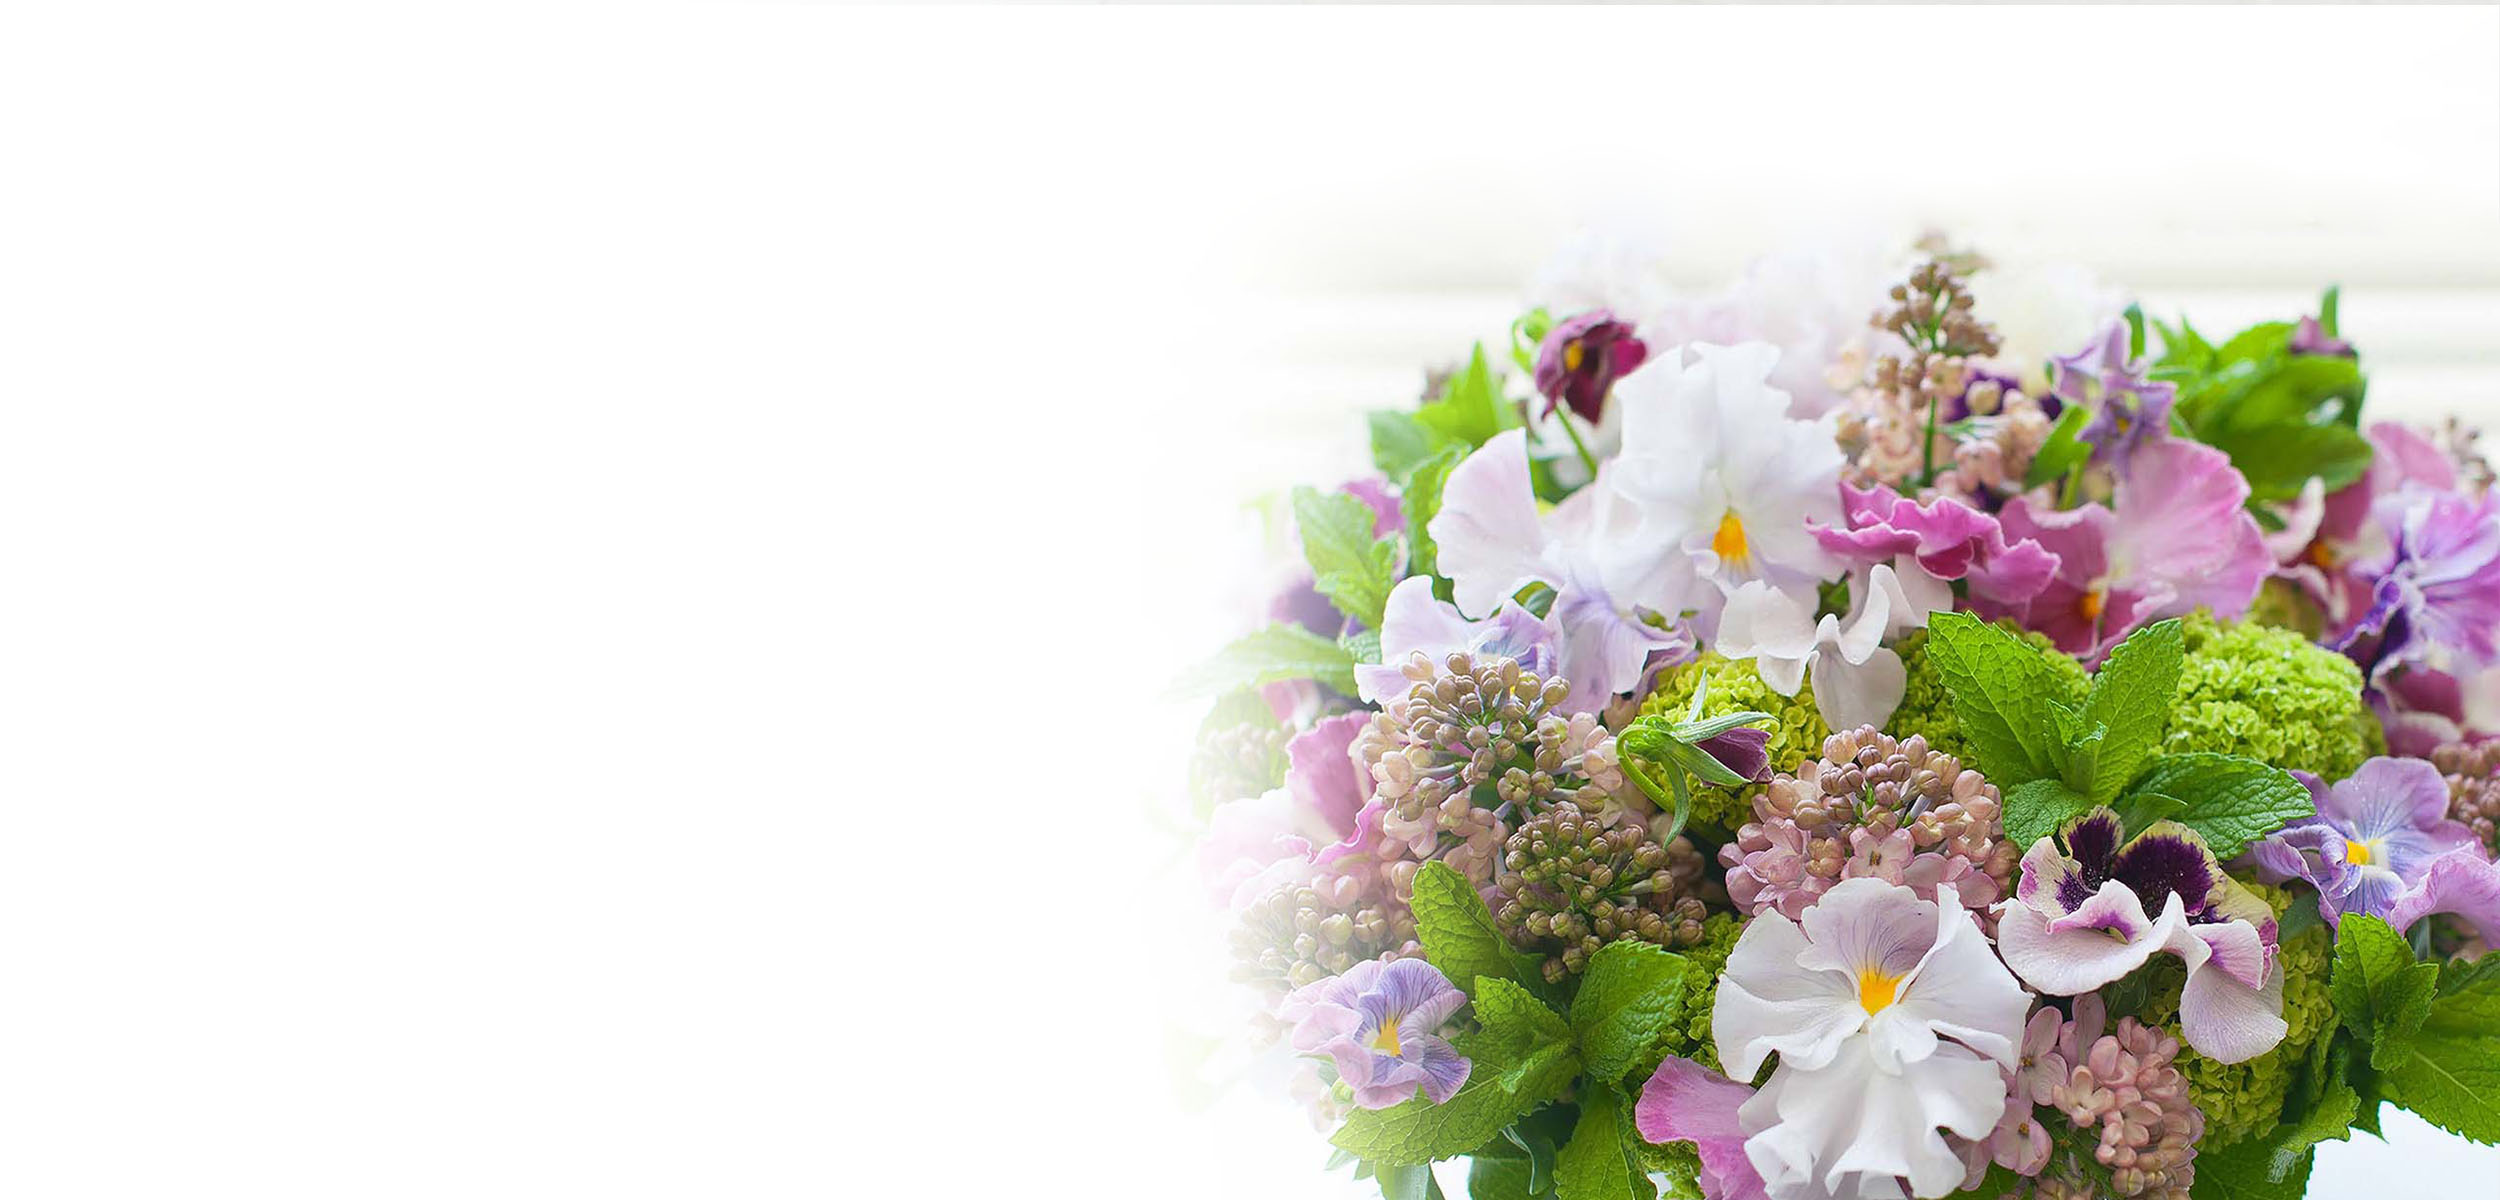 フラワーアレンジメントを長持ちさせる方法は マナー お役立ち お知らせ お祝い お供えの花通販ギフトは送料無料の お花の窓口 へ